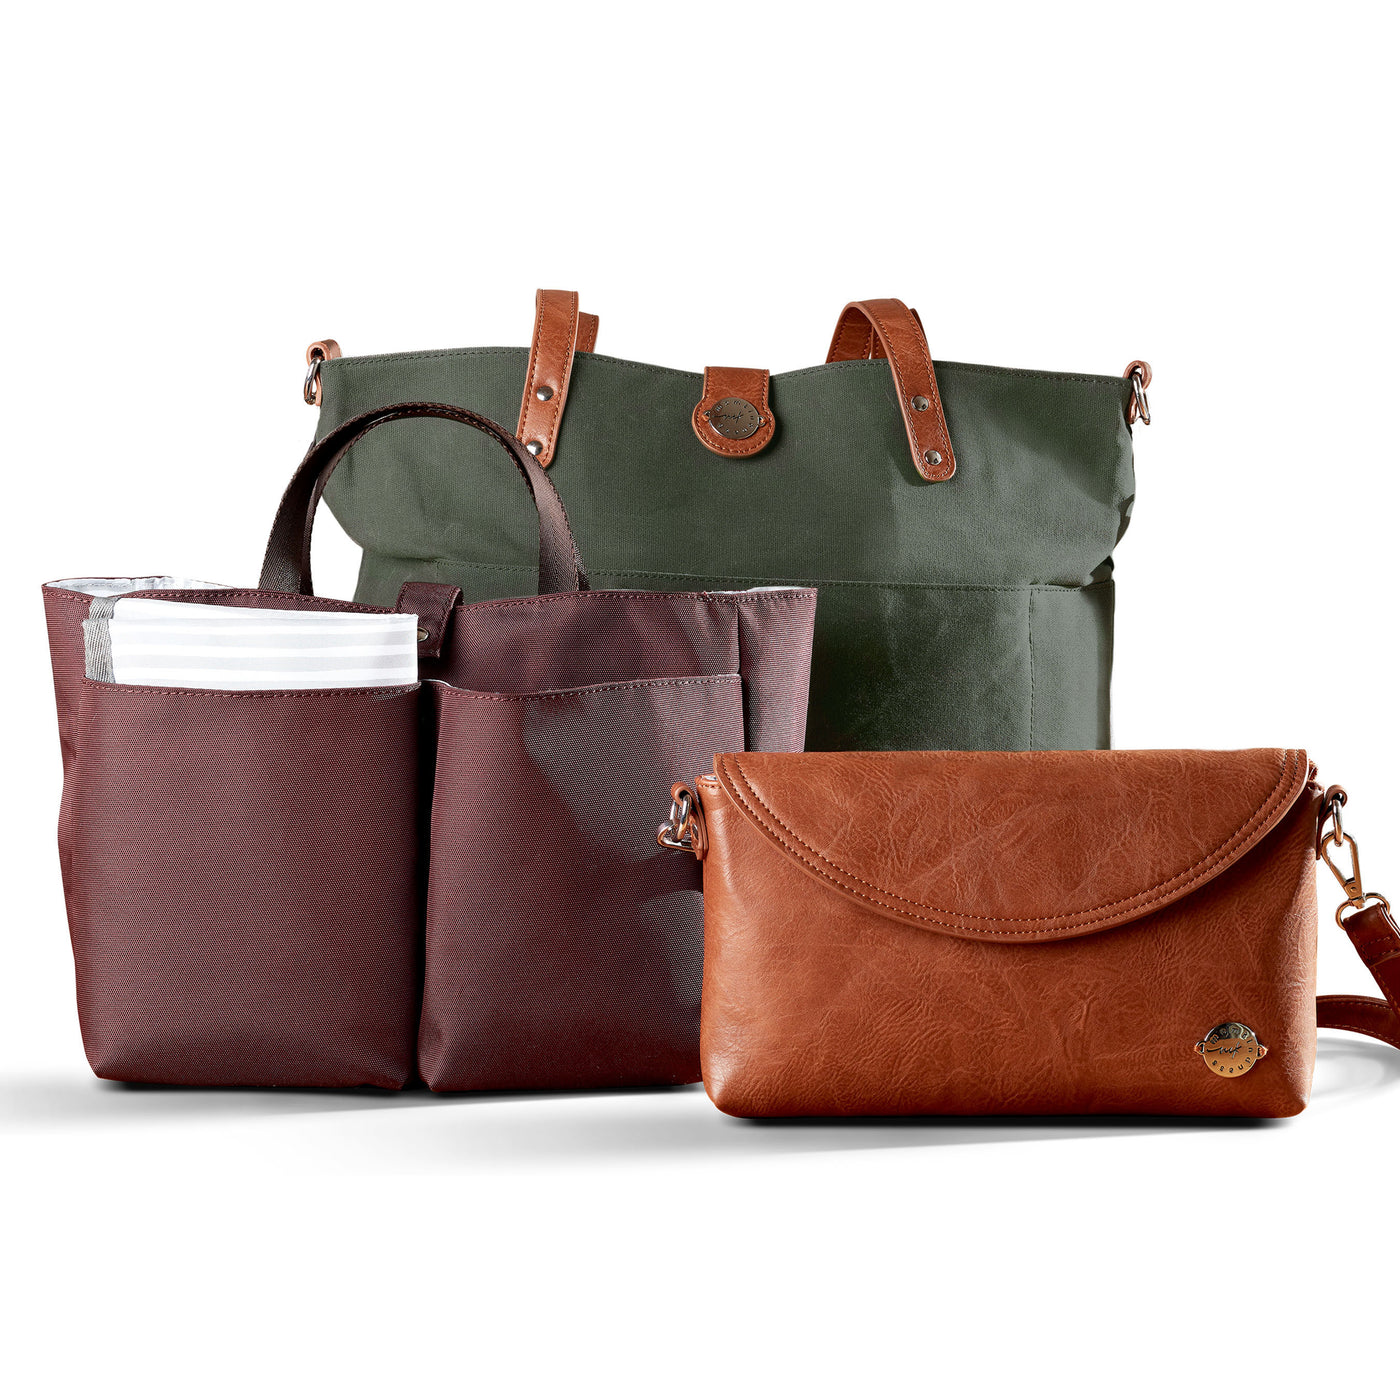 Women's Travel Handbag Organizer Insert-Multi-Pocket Purse Liner